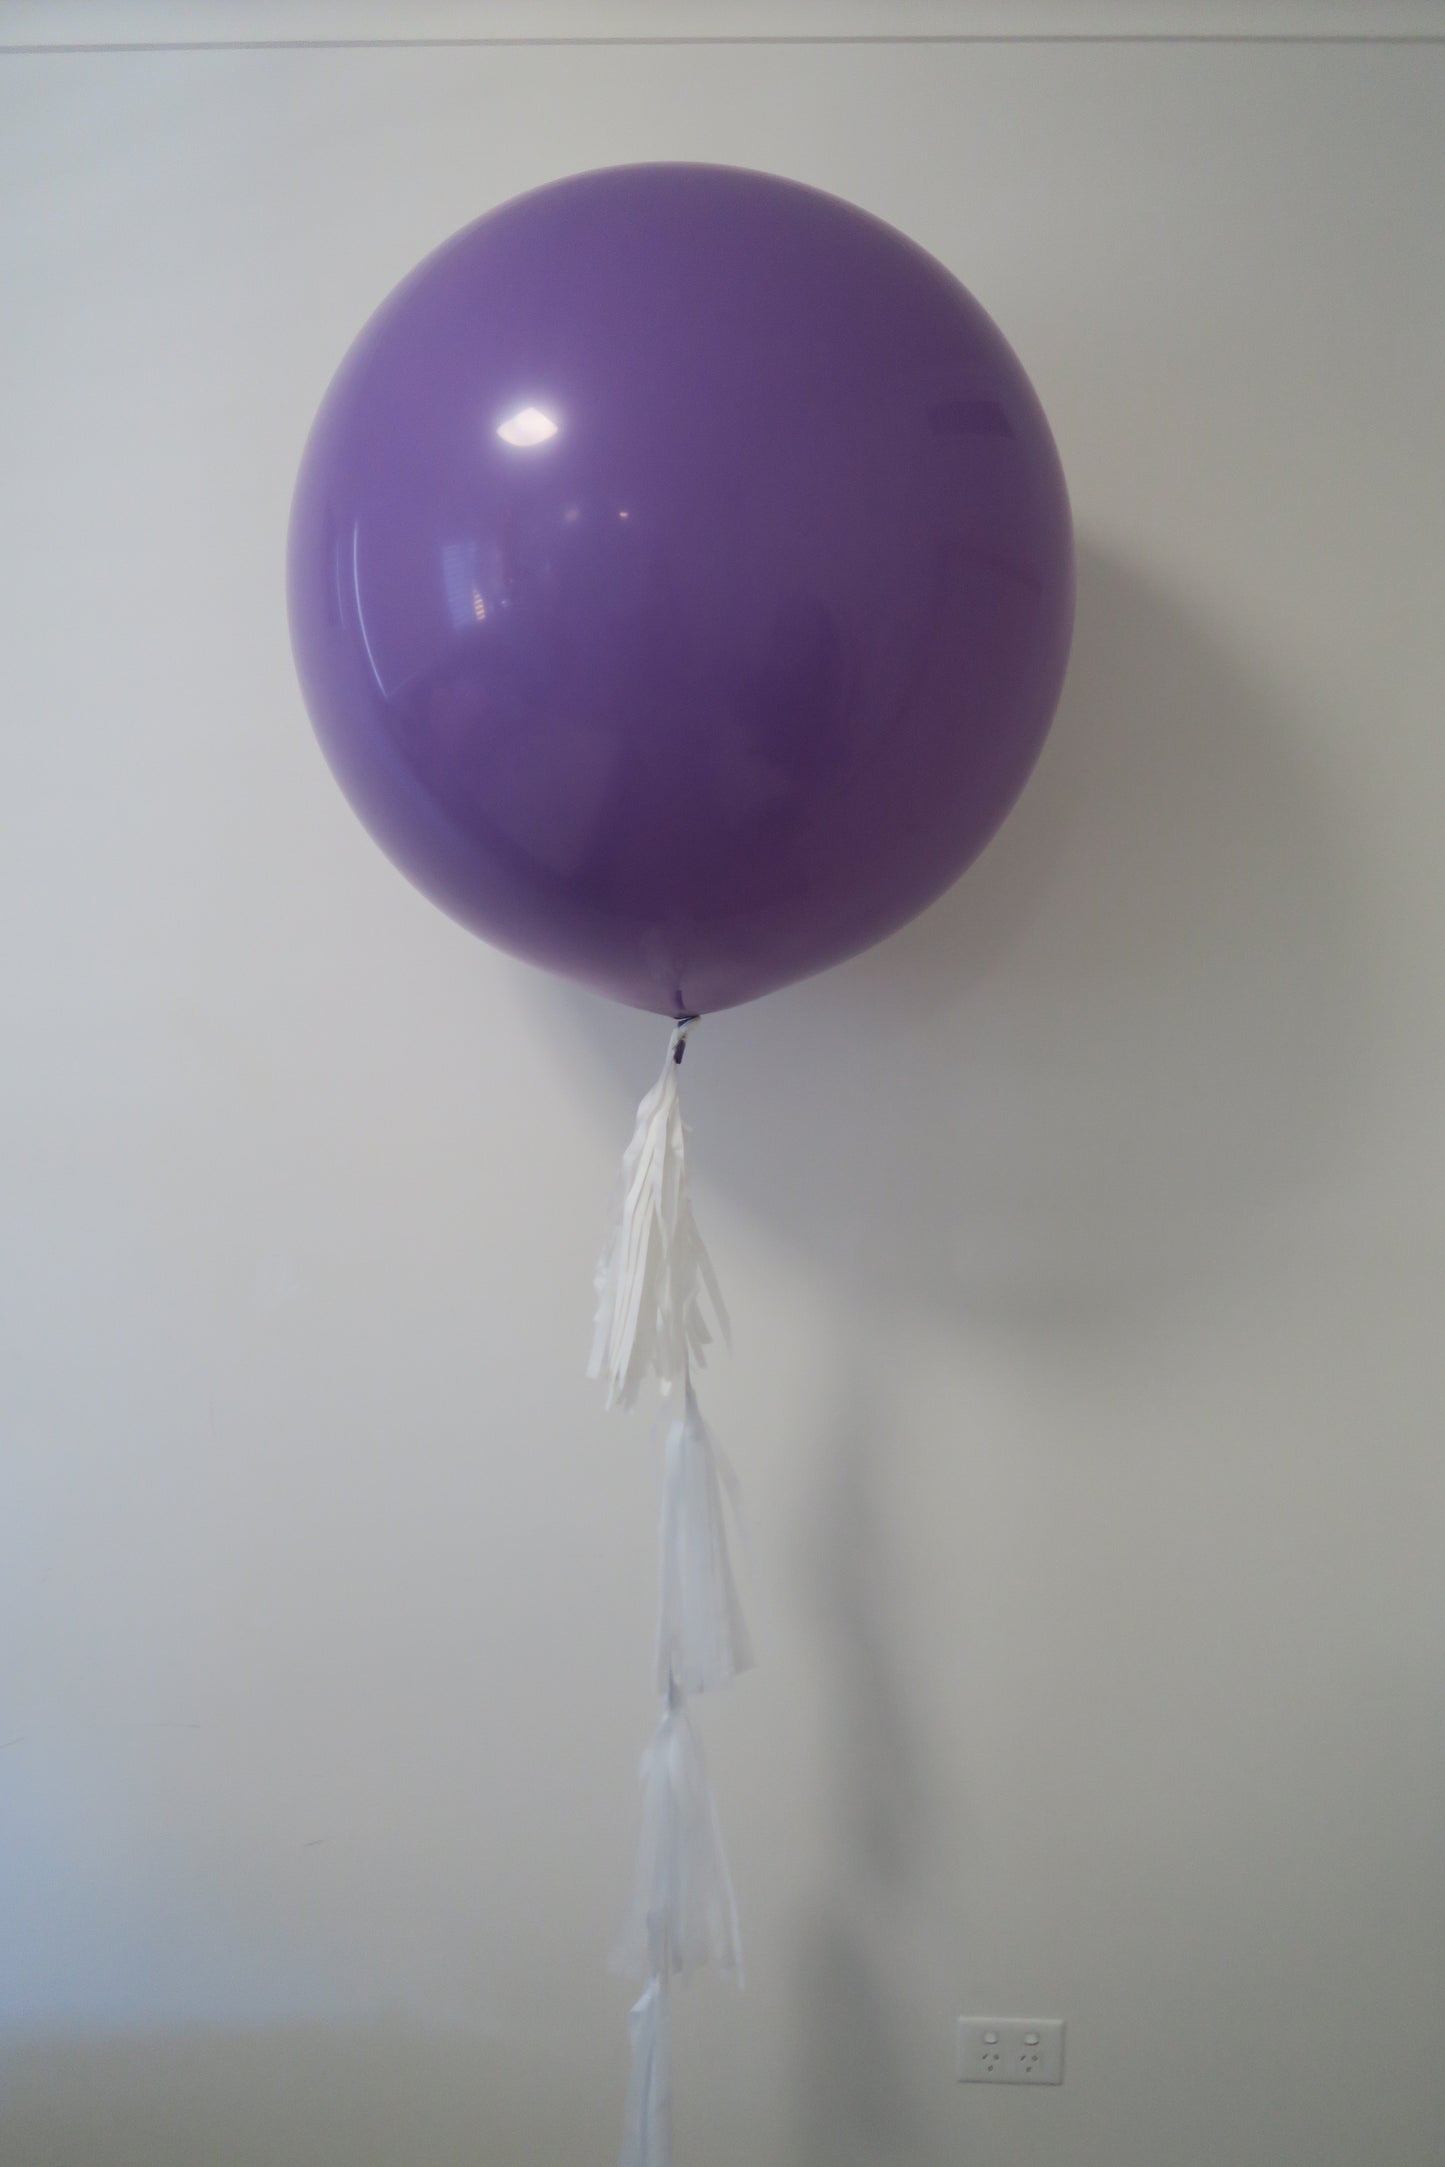 3ft round balloon with tassel arrangement